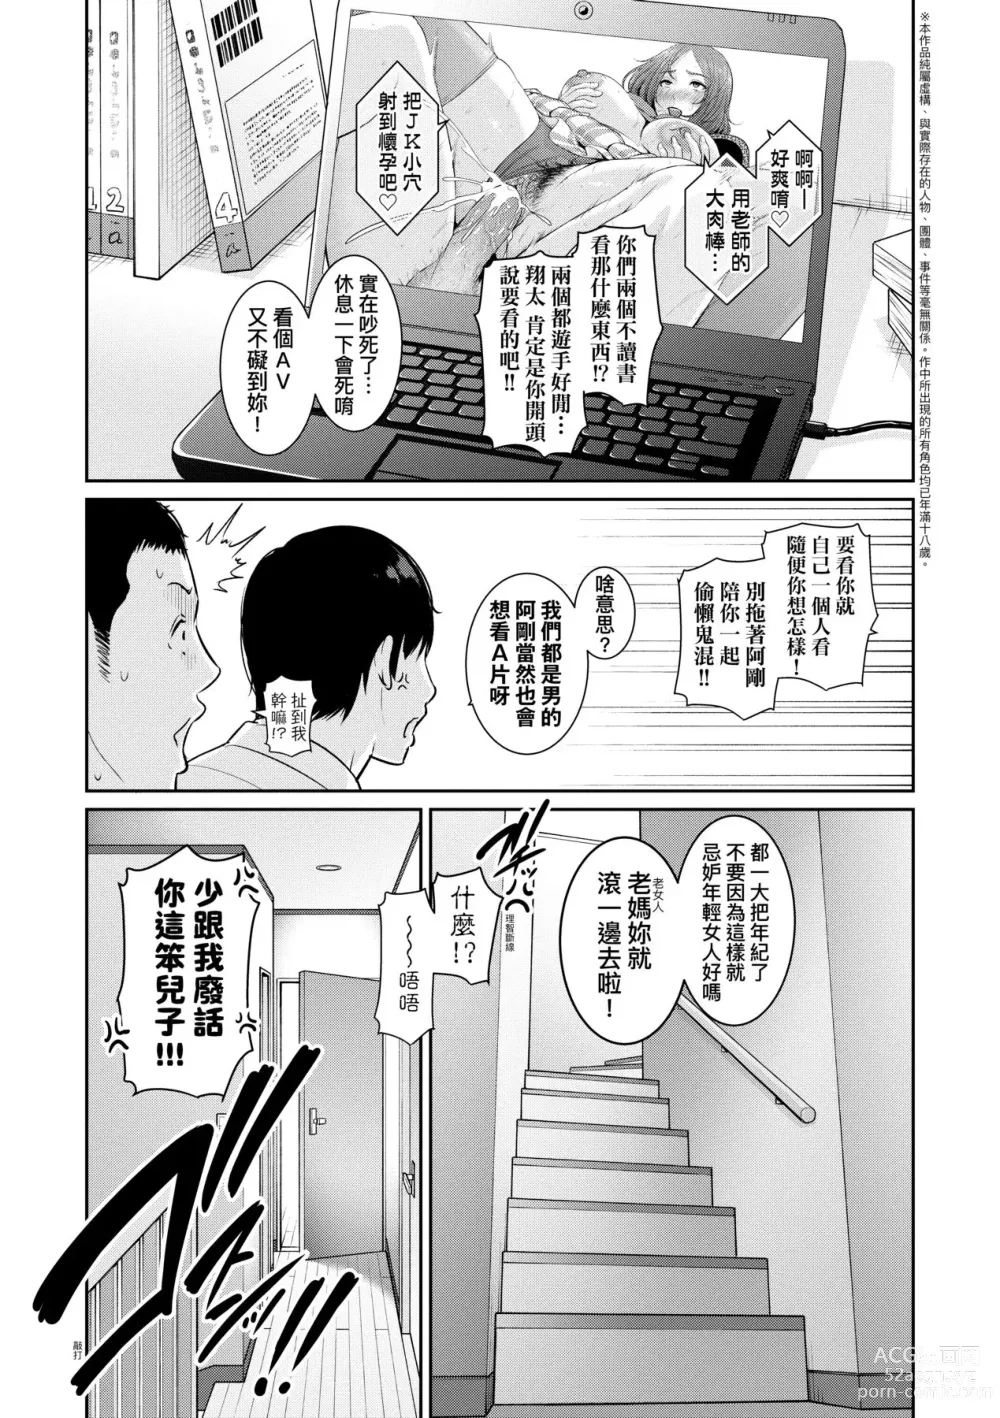 Page 6 of manga 續．朋友的馬麻 (decensored)